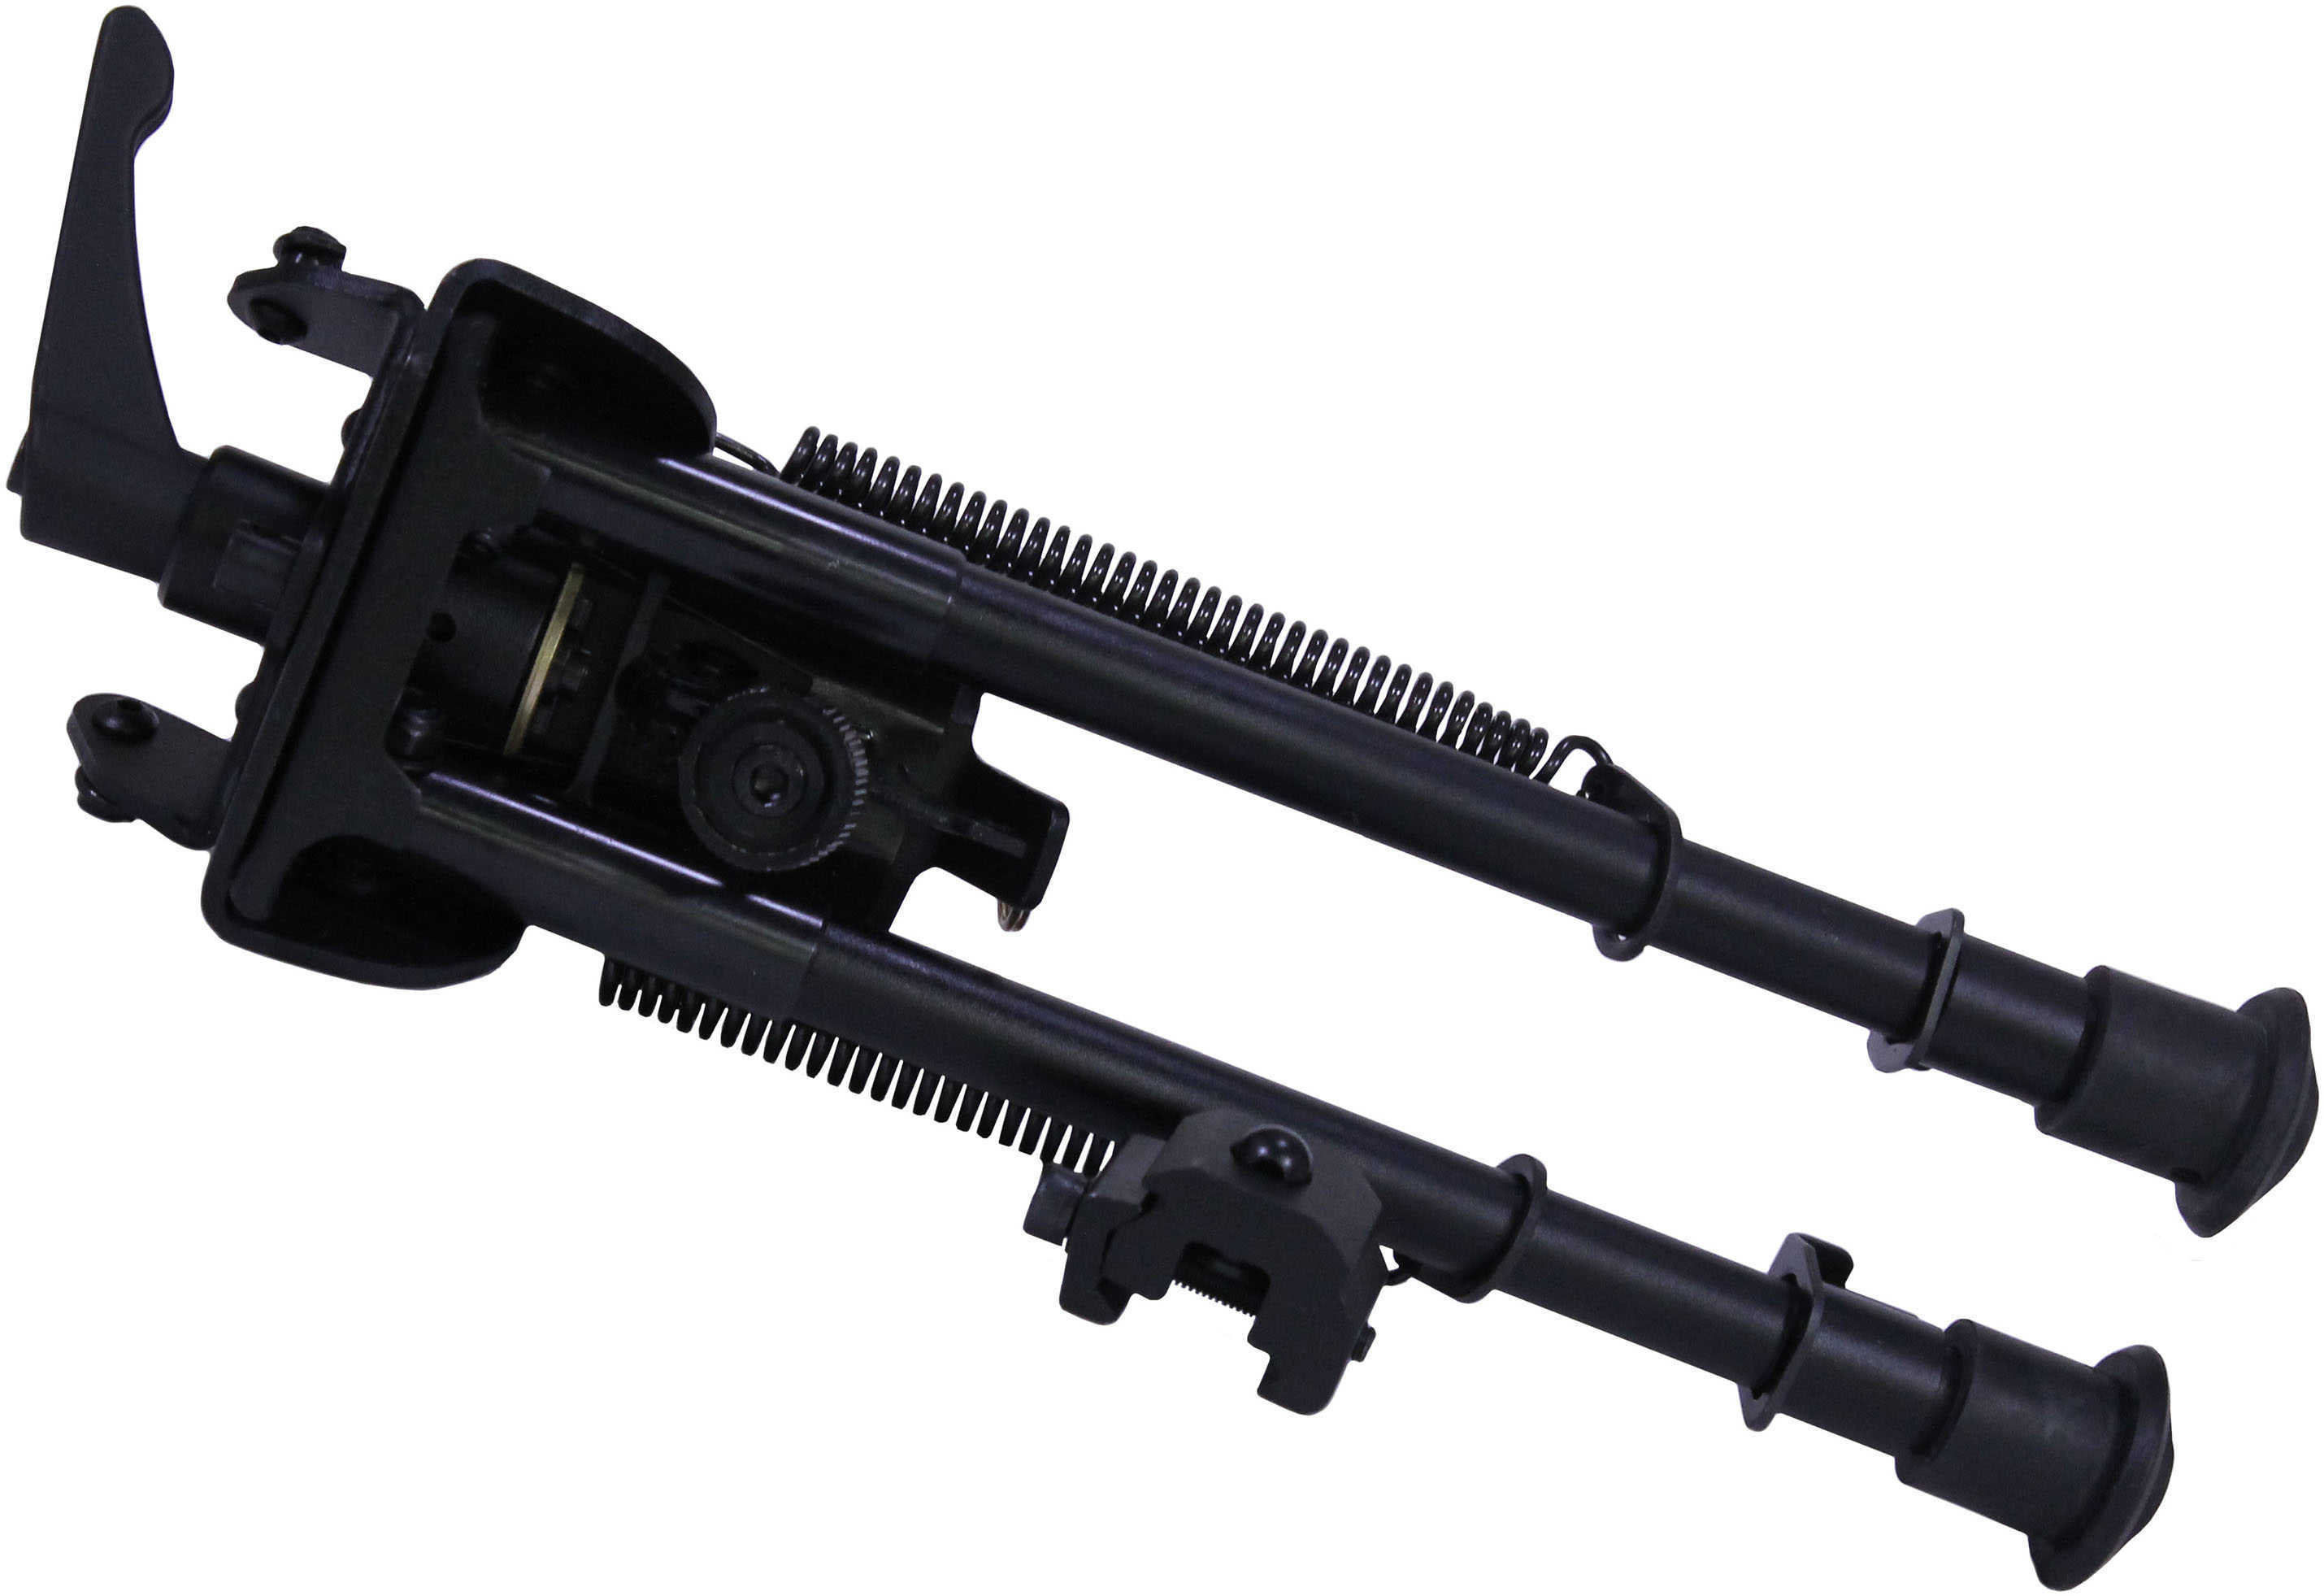 Truglo TAC POD Adjustable Bipod Pivot Black Adaptor Fits Sling Swivel Stud or Picatinny Rail 9"-13" TG8902L